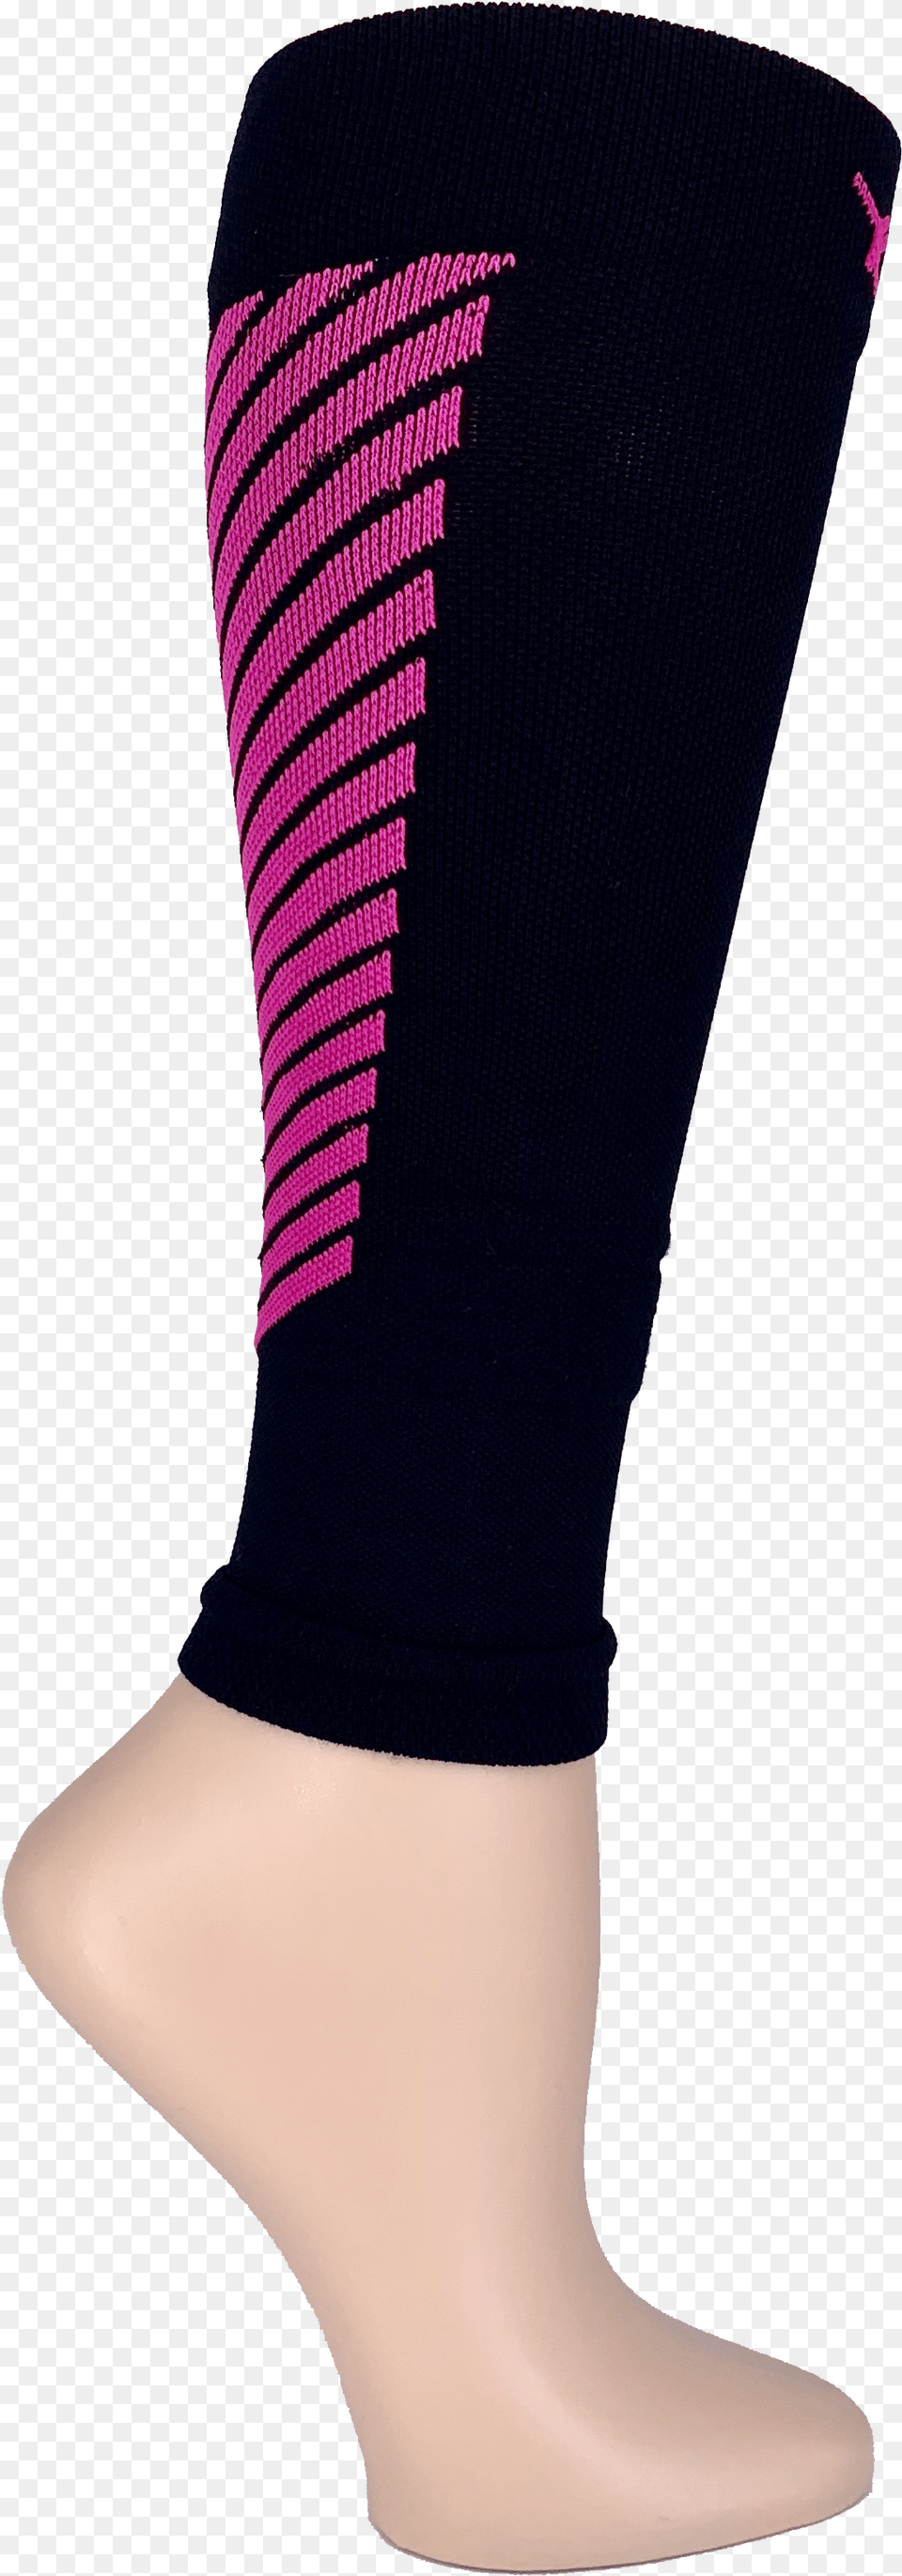 Black U0026 Neon Pink Arrow Sleeve 15 20 Mmhg Shoe, Clothing, Hosiery, Sock, Adult Png Image